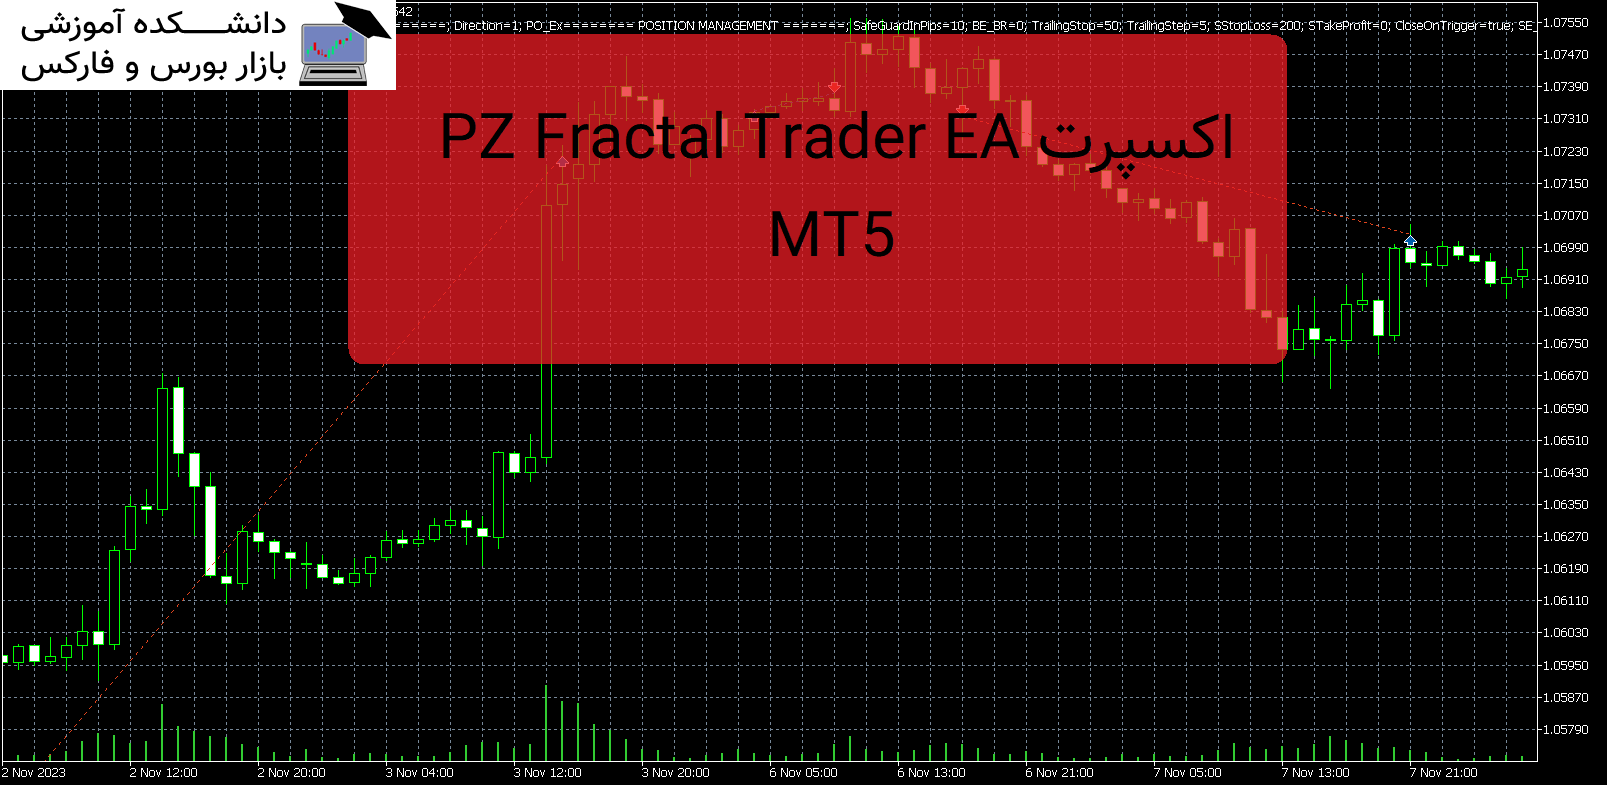 تصویر اکسپرت PZ Fractal Trader EA MT5